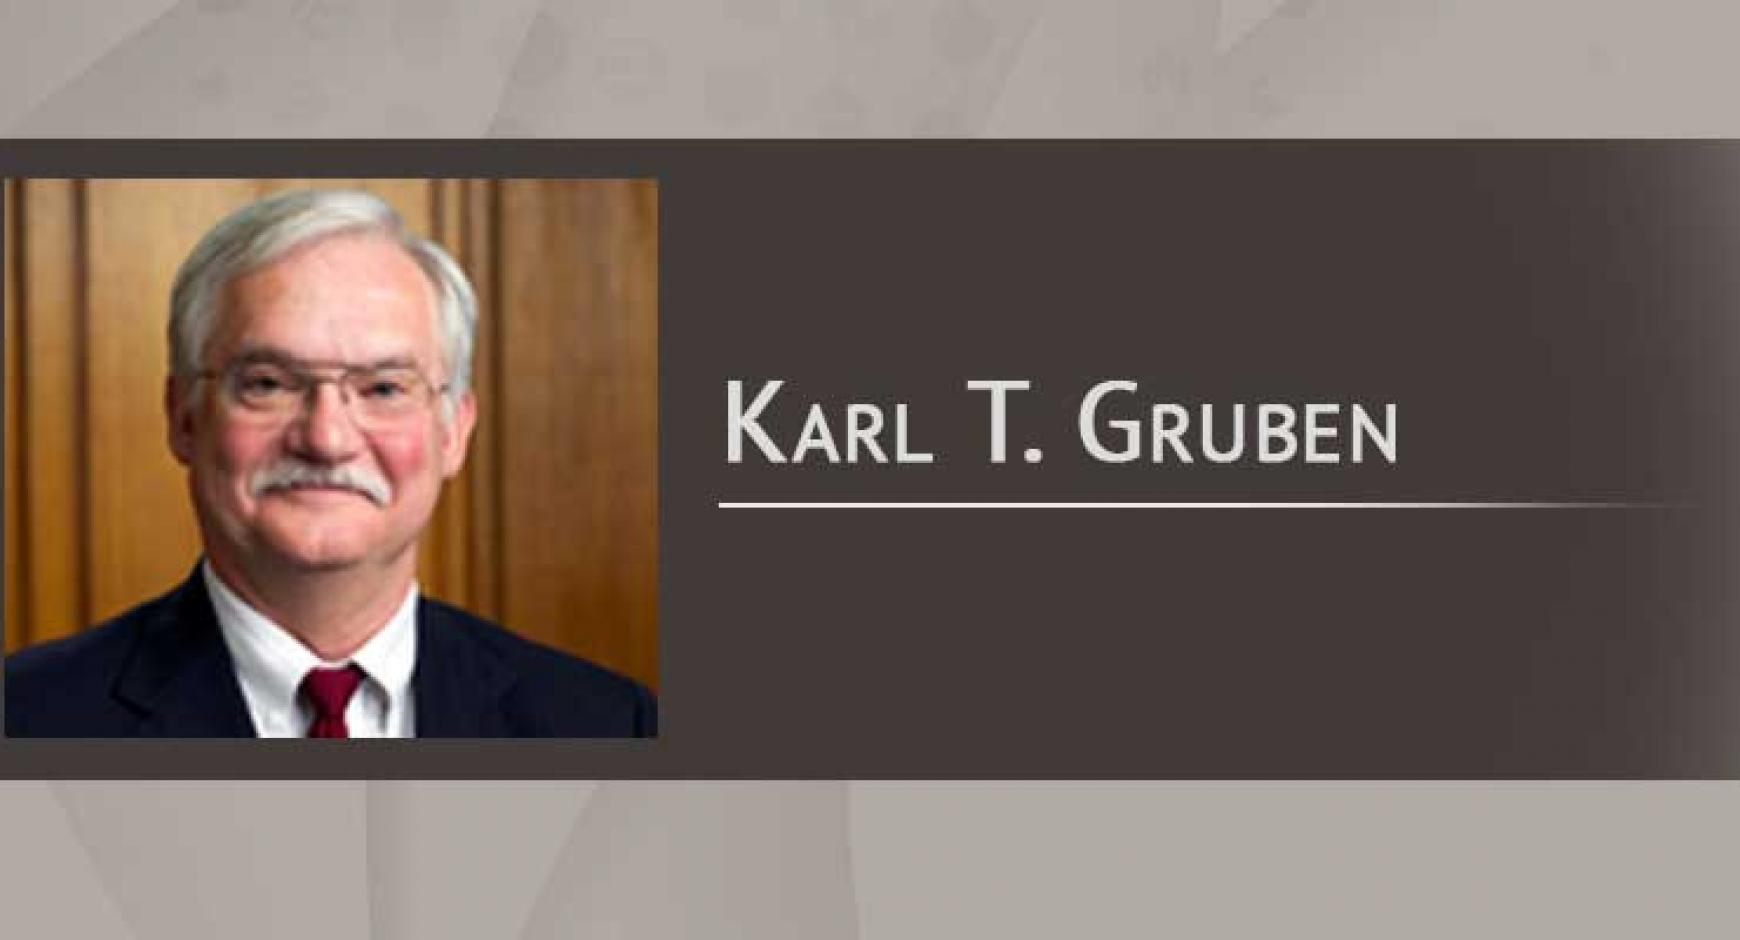 Karl T. Gruben, iSchool alumnus